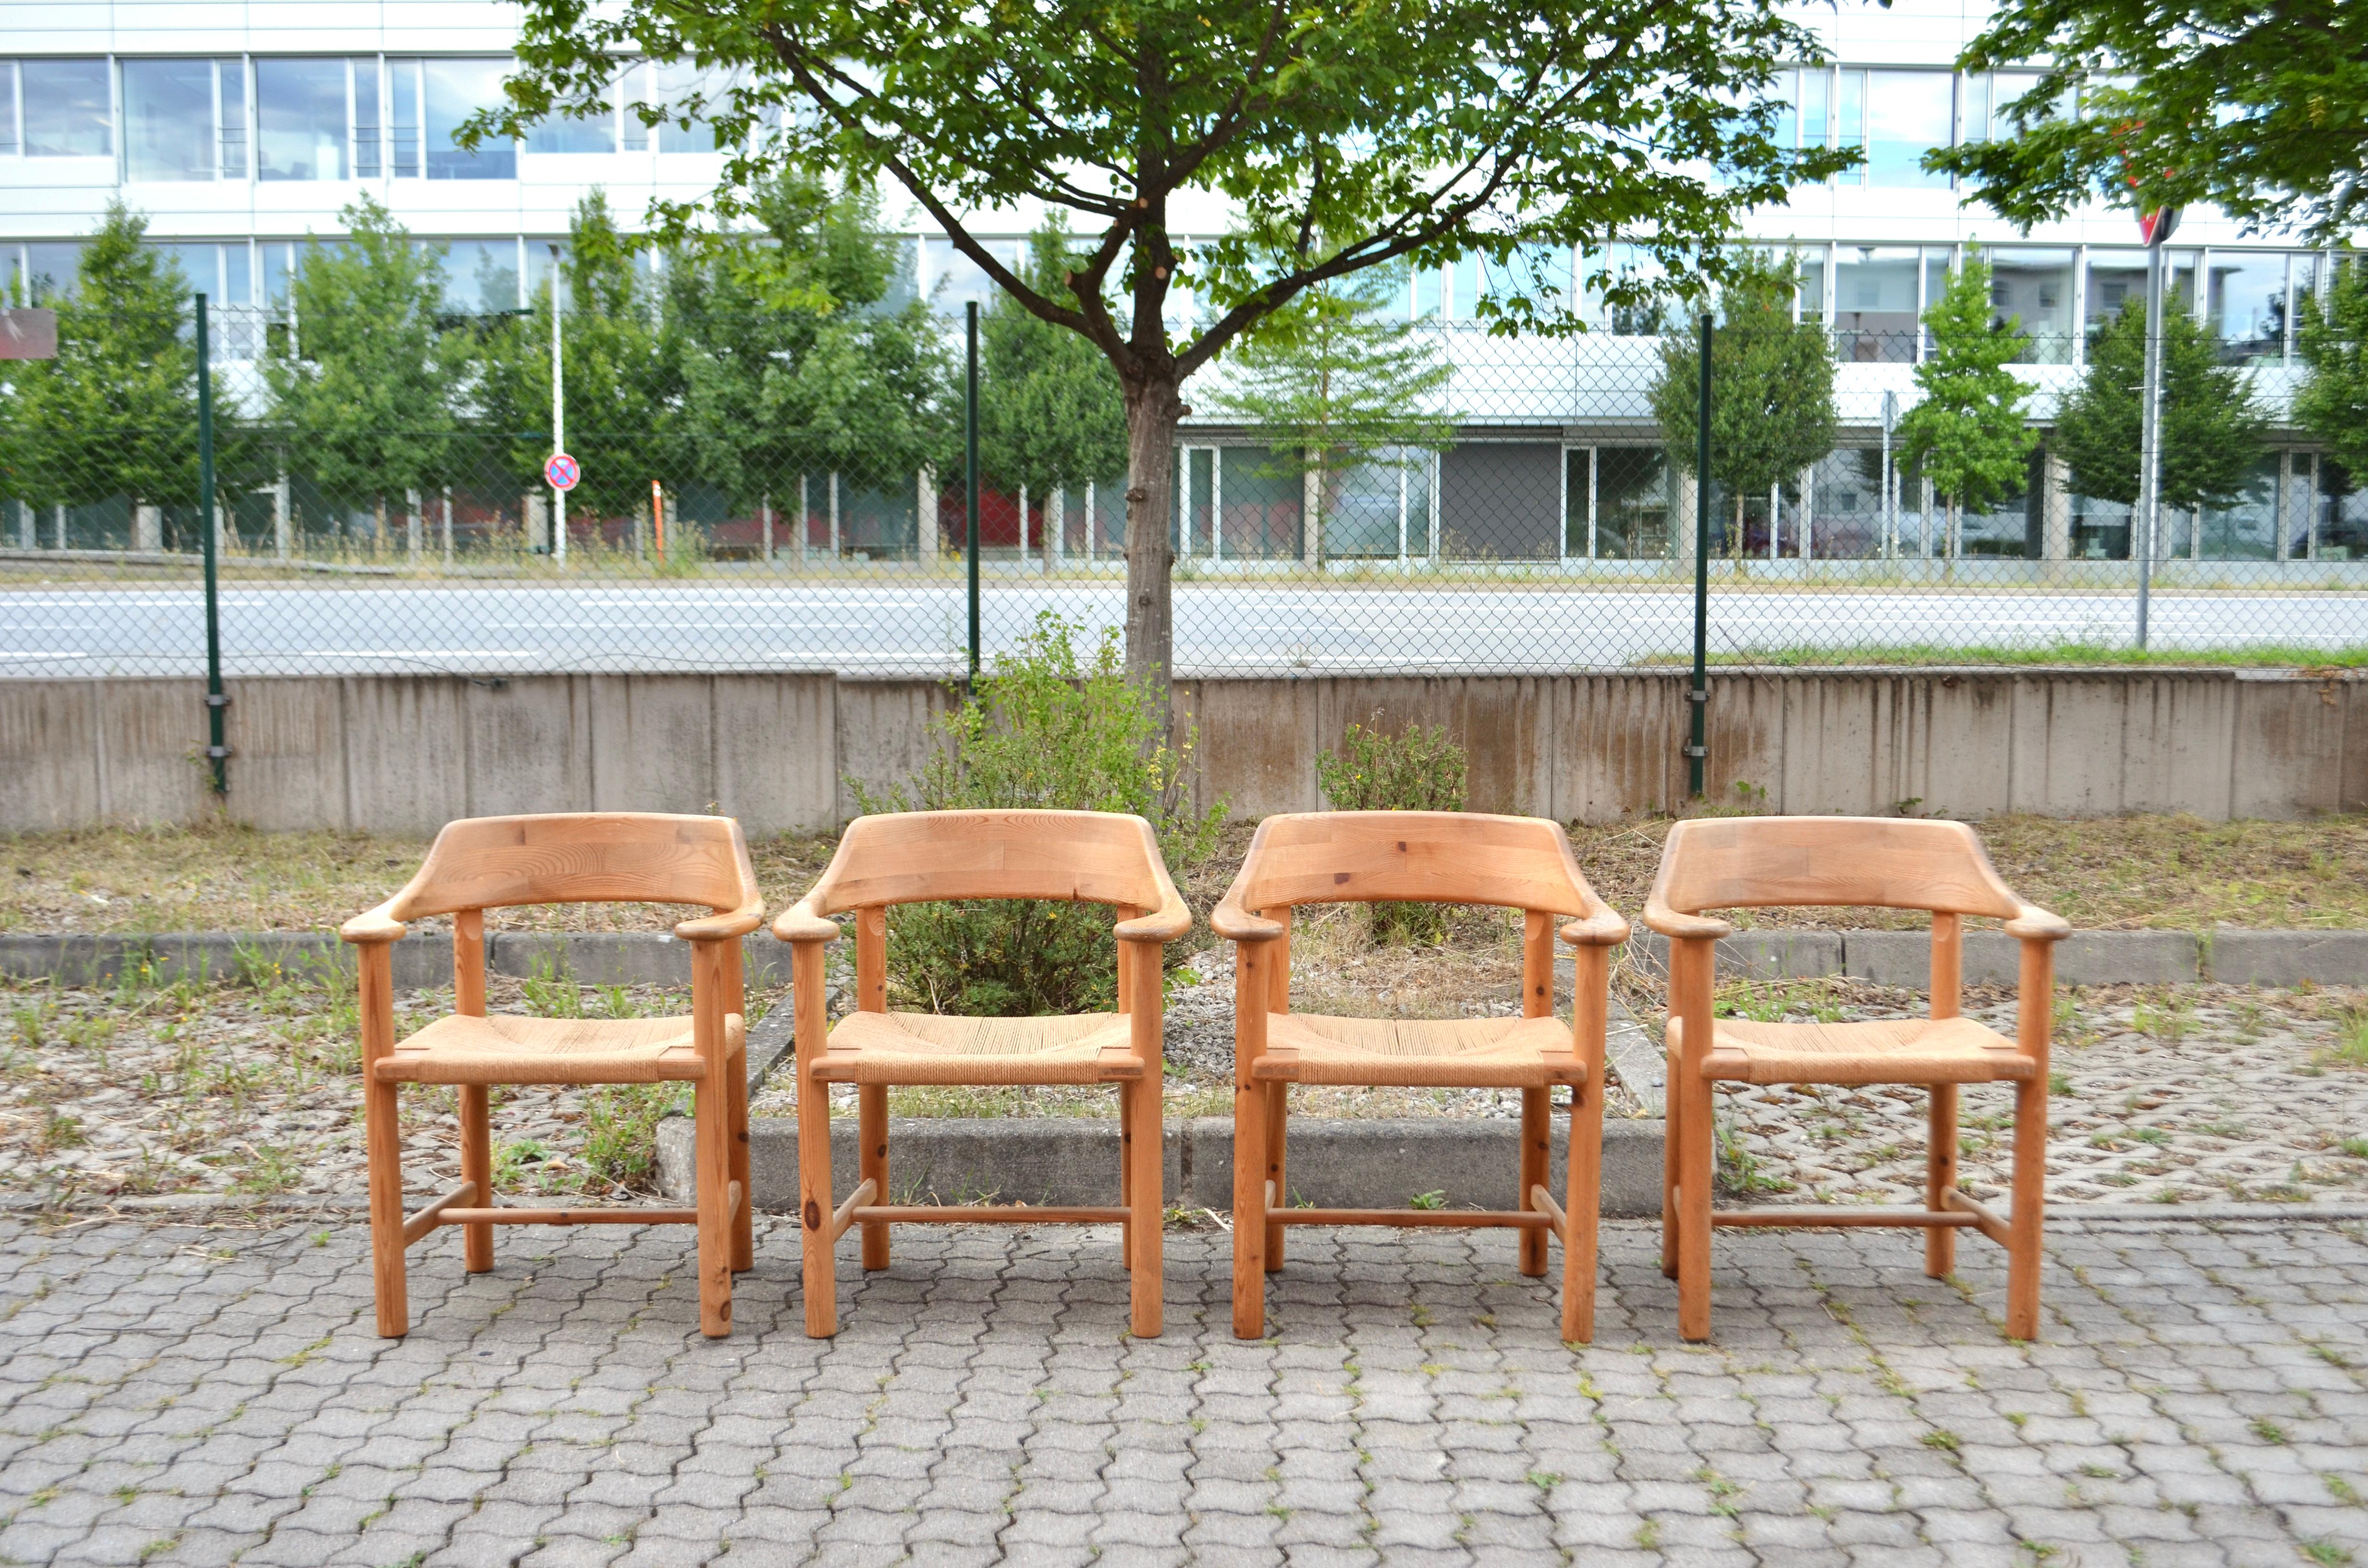 Esszimmerstühle, entworfen von Rainer Daumiller und hergestellt von Hirtshals Savvaerk.
Modell mit Papierschnur und Armlehnen.
Massives skandinavisches Kiefernholz, das schön patiniert ist.
Diese Stühle sind sehr bequem.

Satz von 4